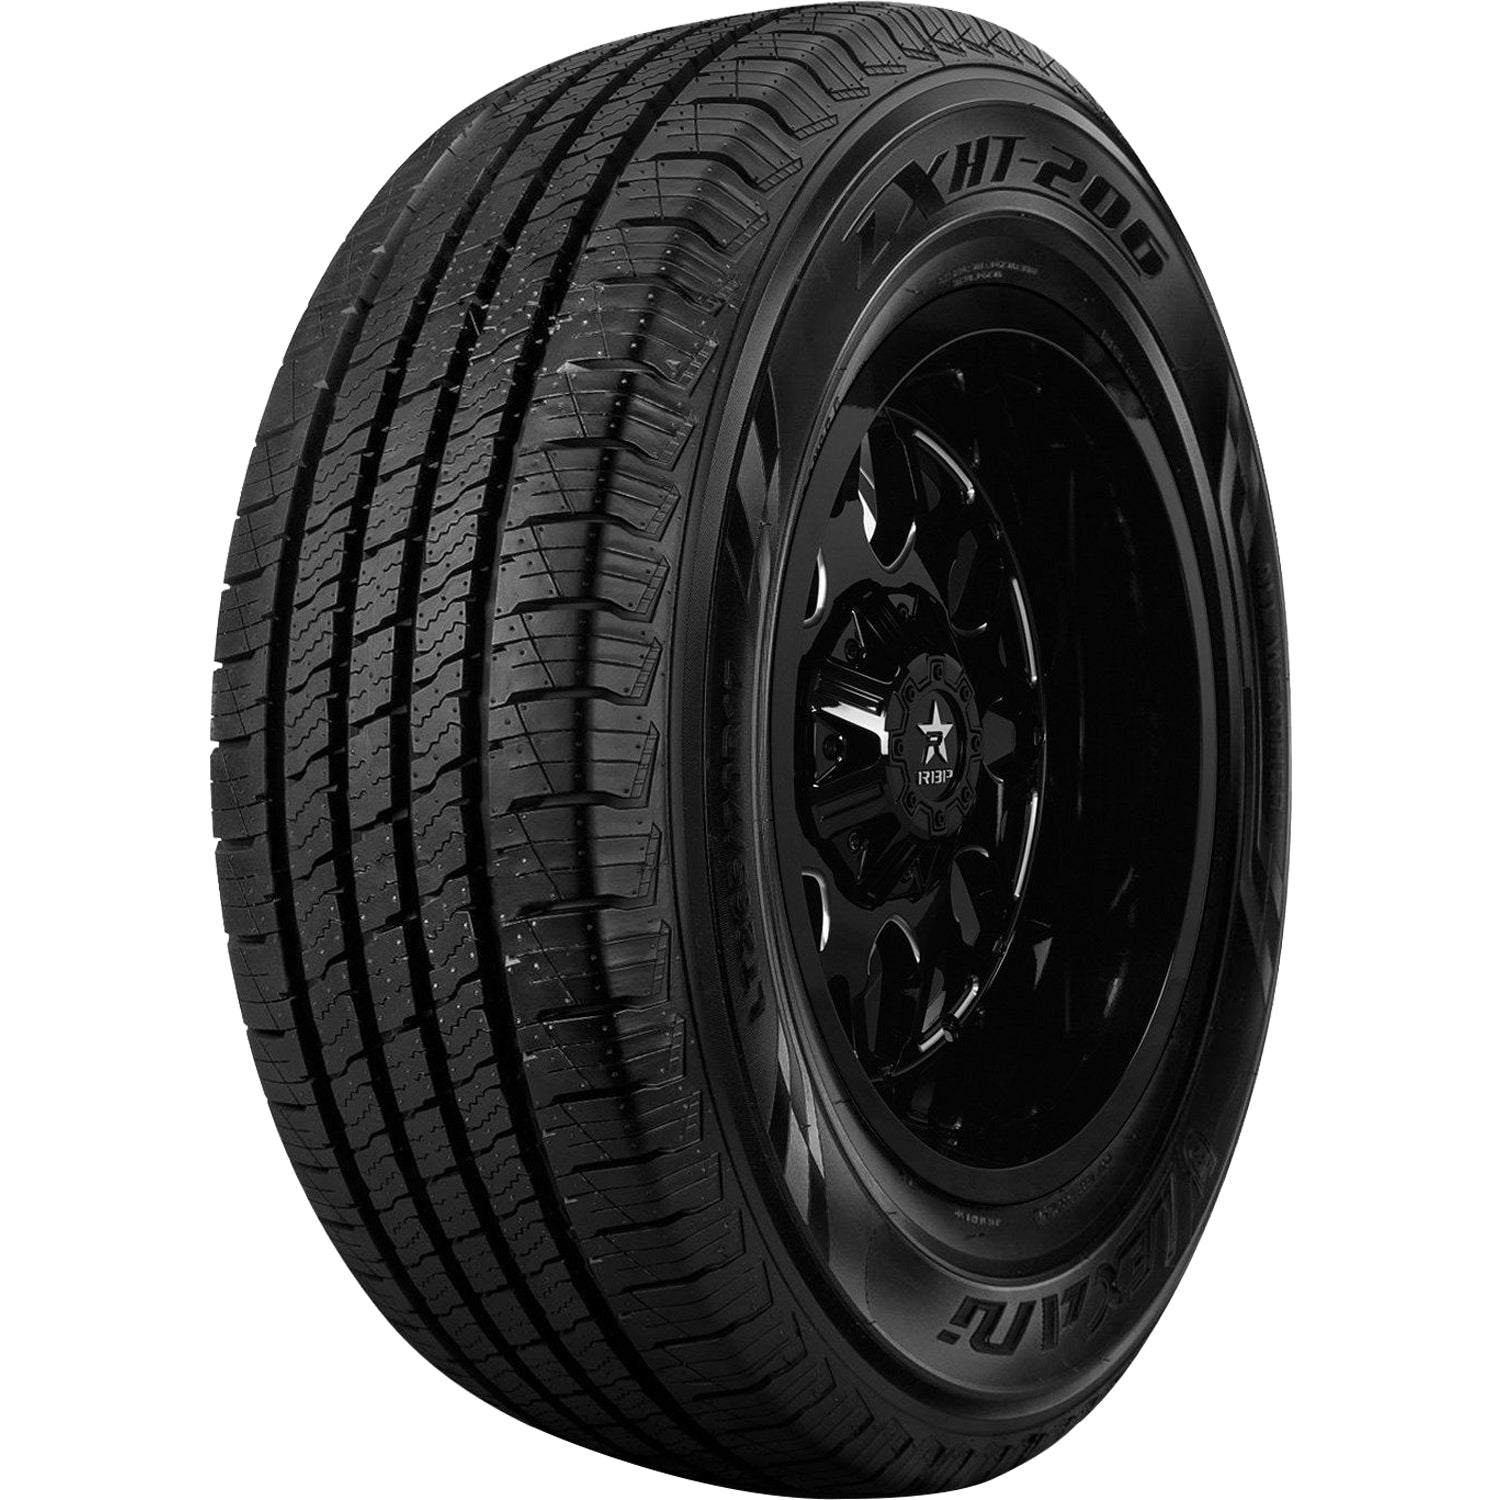 LEXANI LXHT-206 P215/70R16 (27.9X8.5R 16) Tires